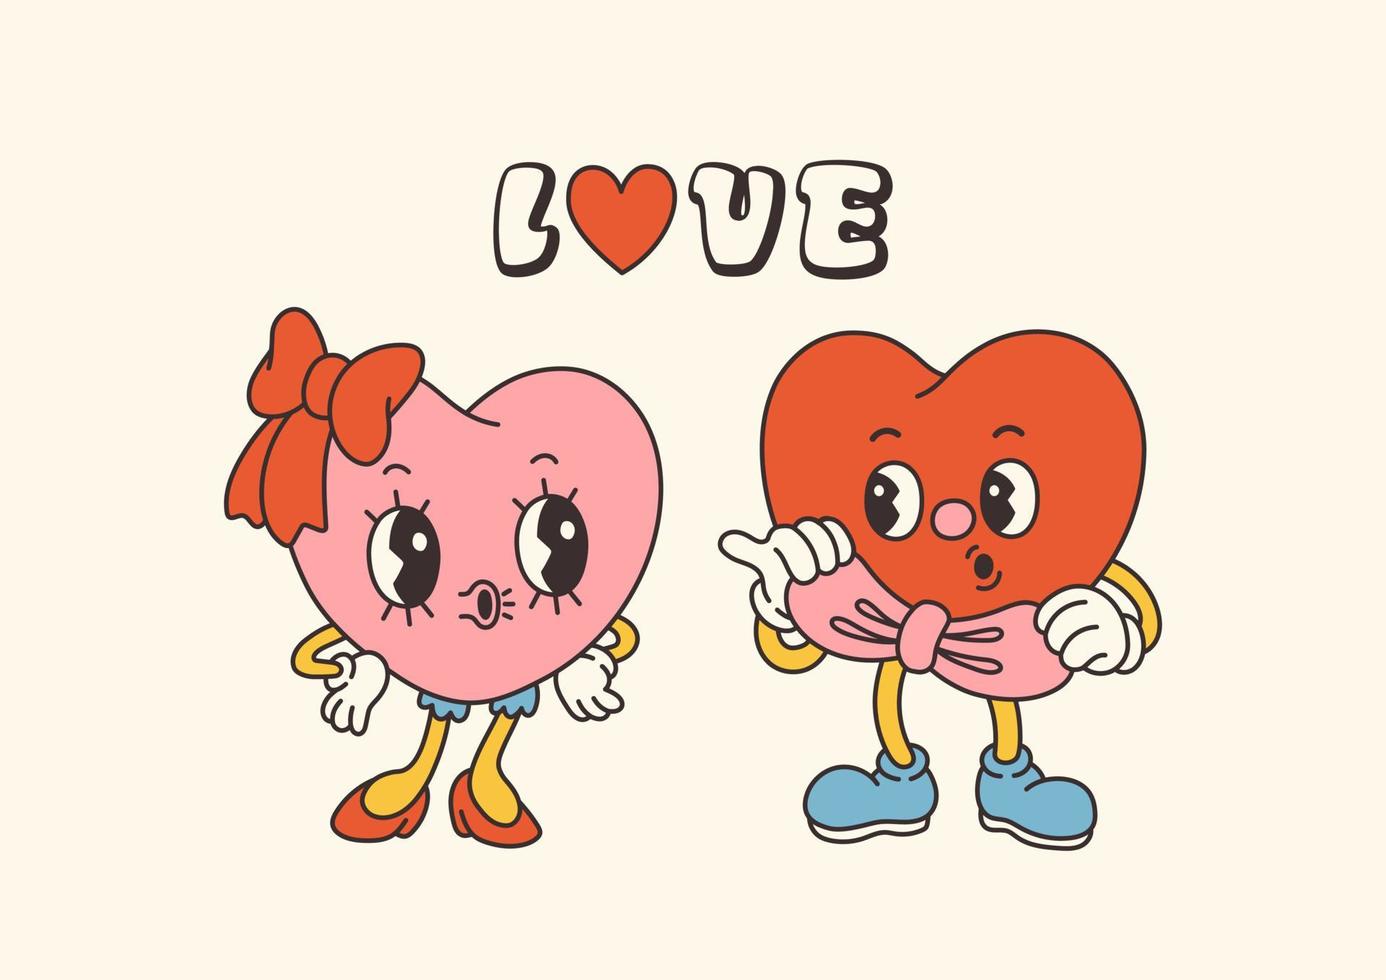 personagens retrô groovy do dia dos namorados com slogans sobre o amor. estilo de desenho animado da moda dos anos 70. cartão, cartão postal, vetor de impressão